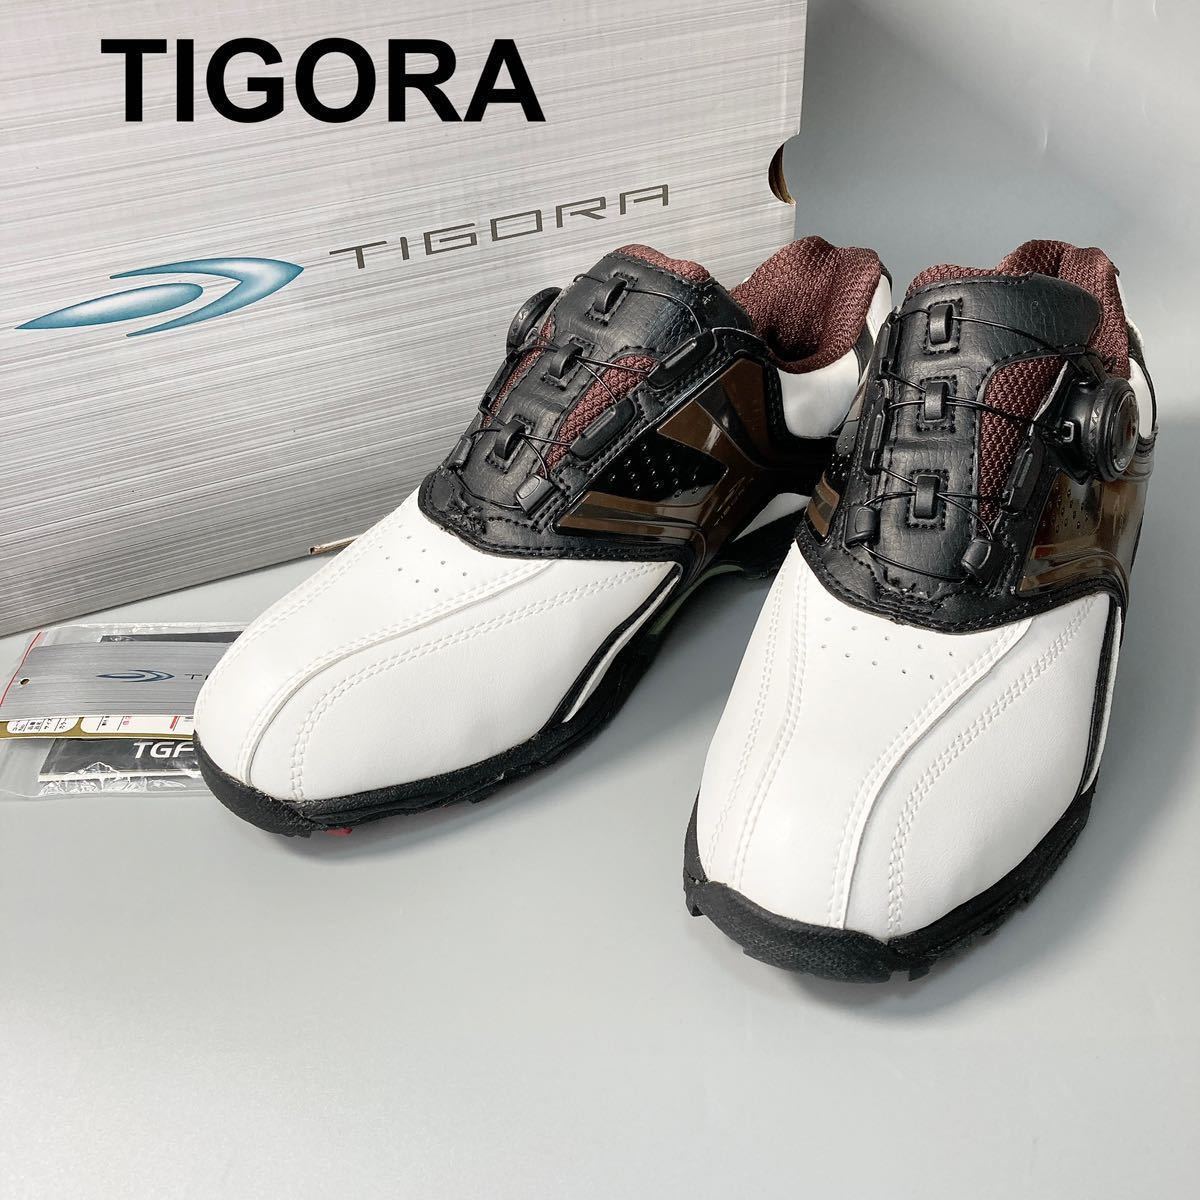  новый товар TIGORAtigola туфли для гольфа dial тип Golf одежда шиповки 25cm мужской B12430-122